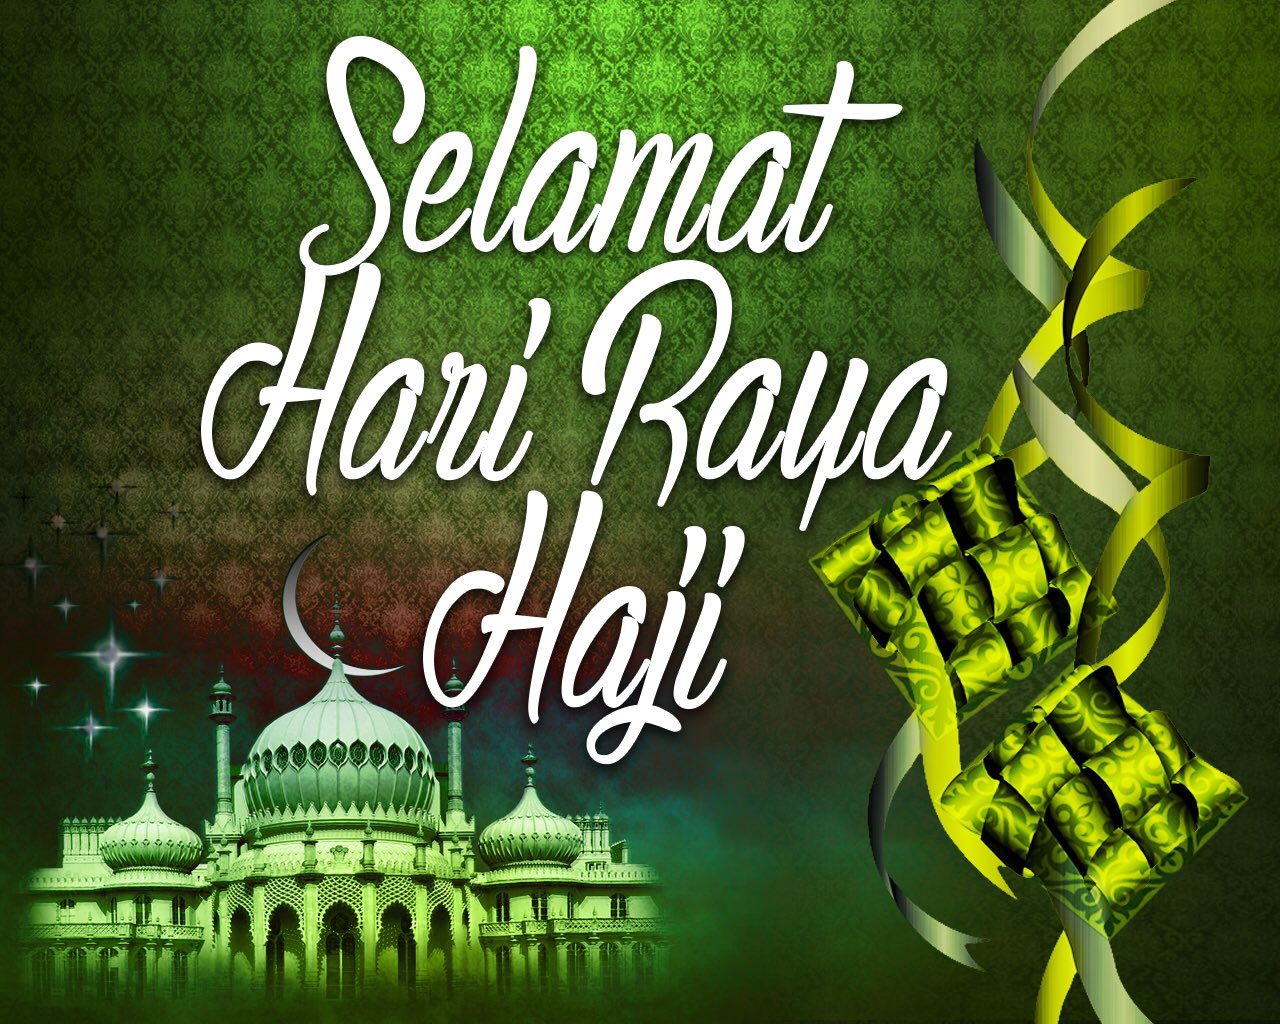 Ng Eng Hen on Twitter: "Selamat Hari Raya Haji to all ...